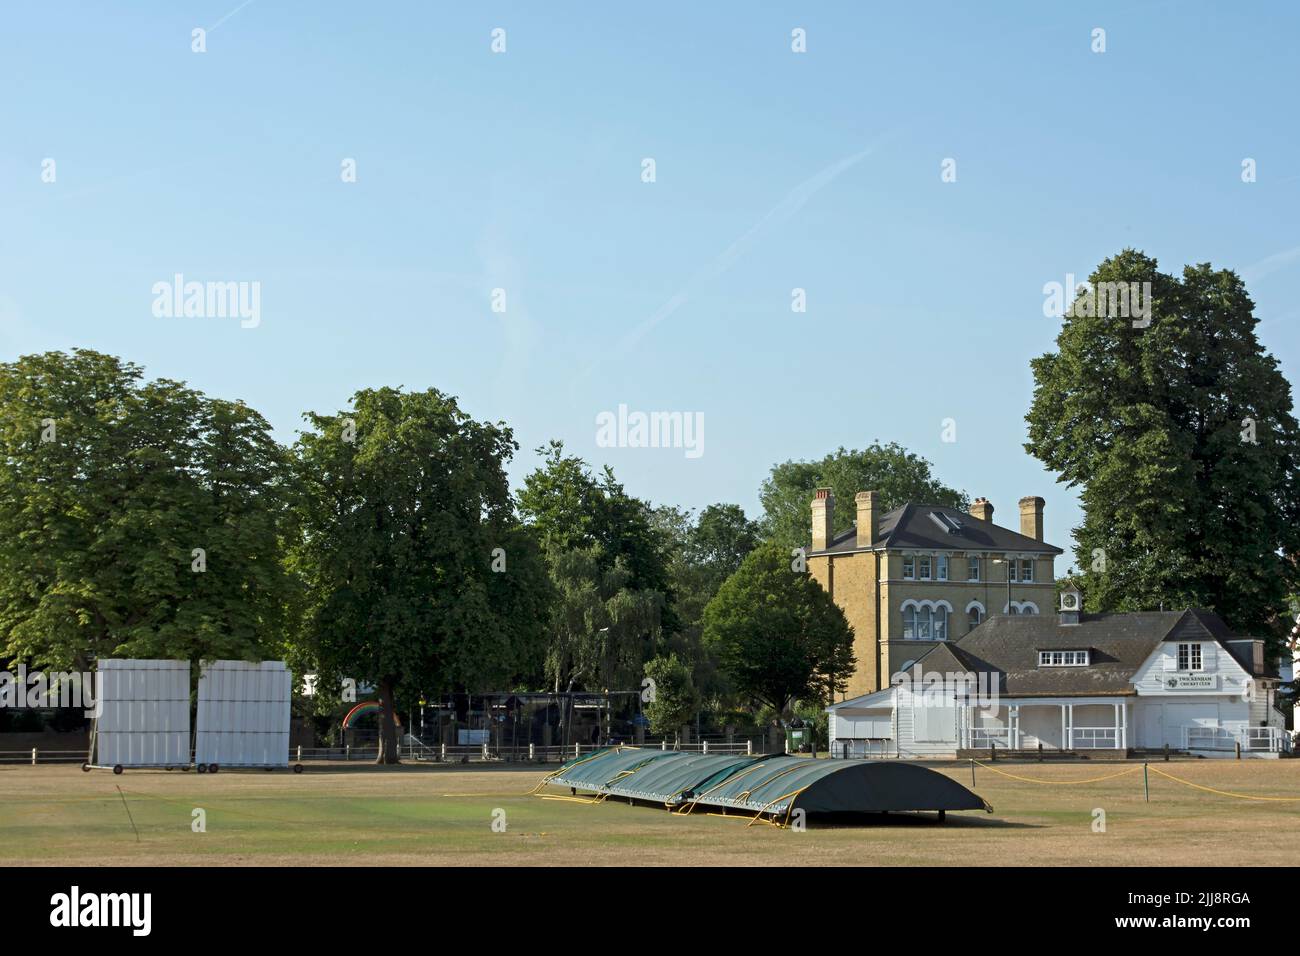 visto a través de twickenham green, las cubiertas, el pabellón y una pantalla de visión del club de cricket twickenham, twickenham, middlesex, inglaterra Foto de stock